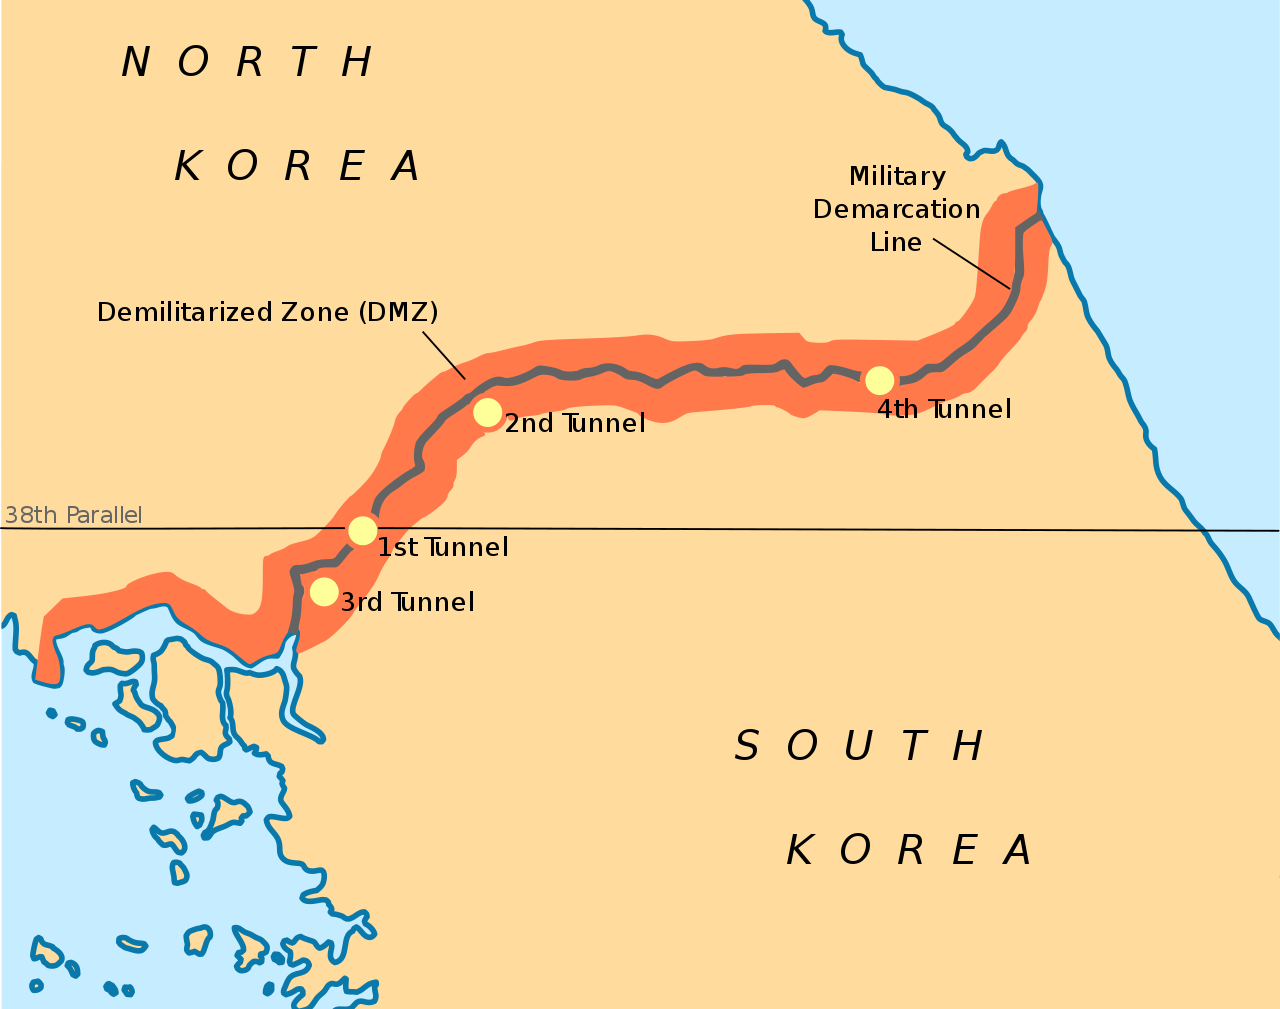 Korea DMZ map